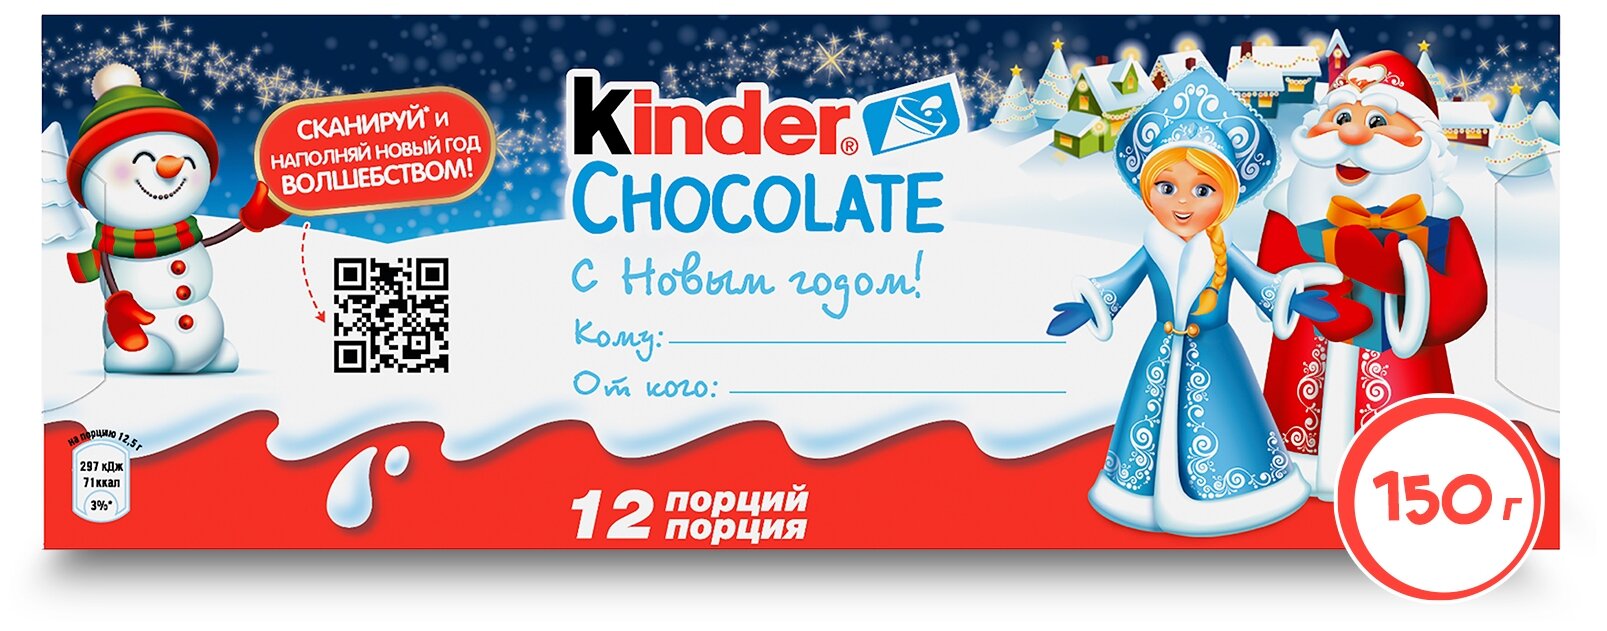 Шоколад Kinder Chocolate 